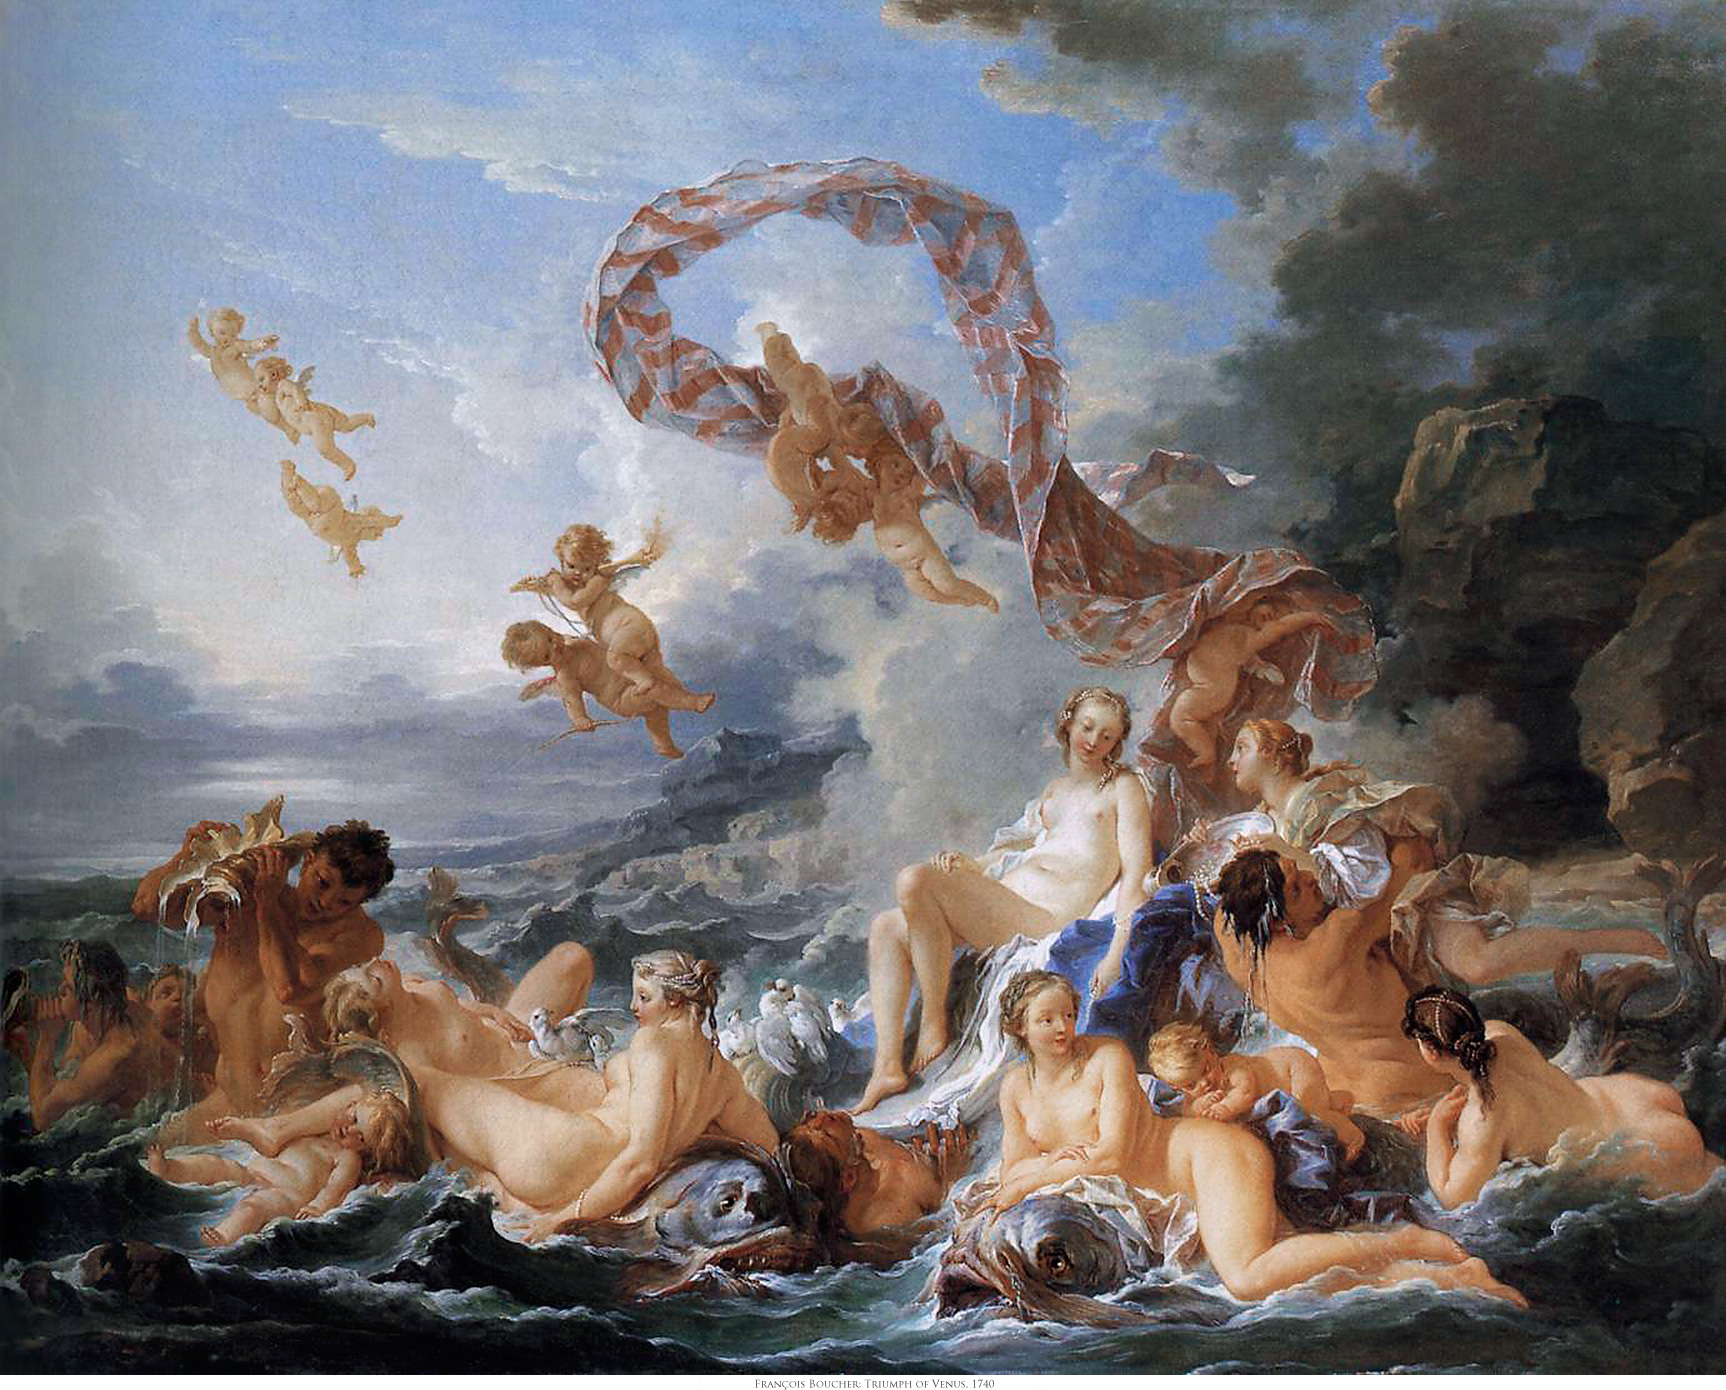 La naissance et le triomphe de Vénus by Francois Boucher - 1740 - 130 x 162 cm 